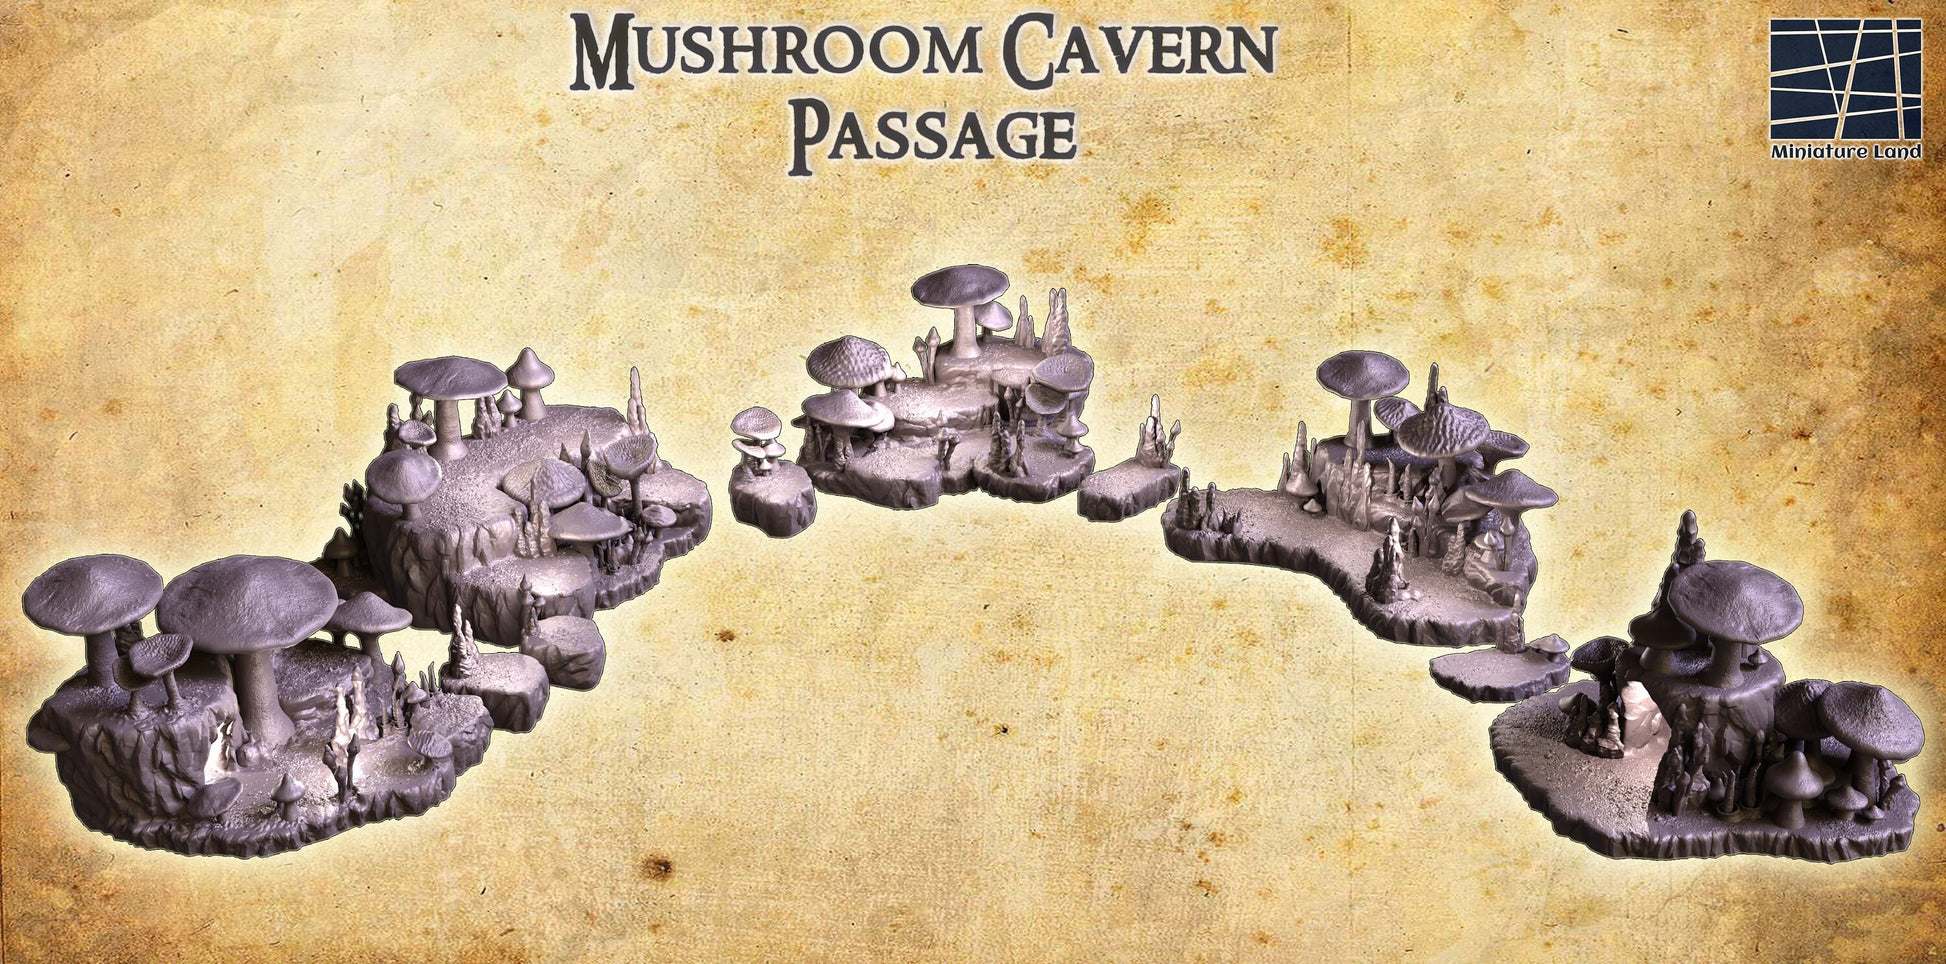 Cavern of Shrooms, Mushroom Cavern, Mushroom Passage